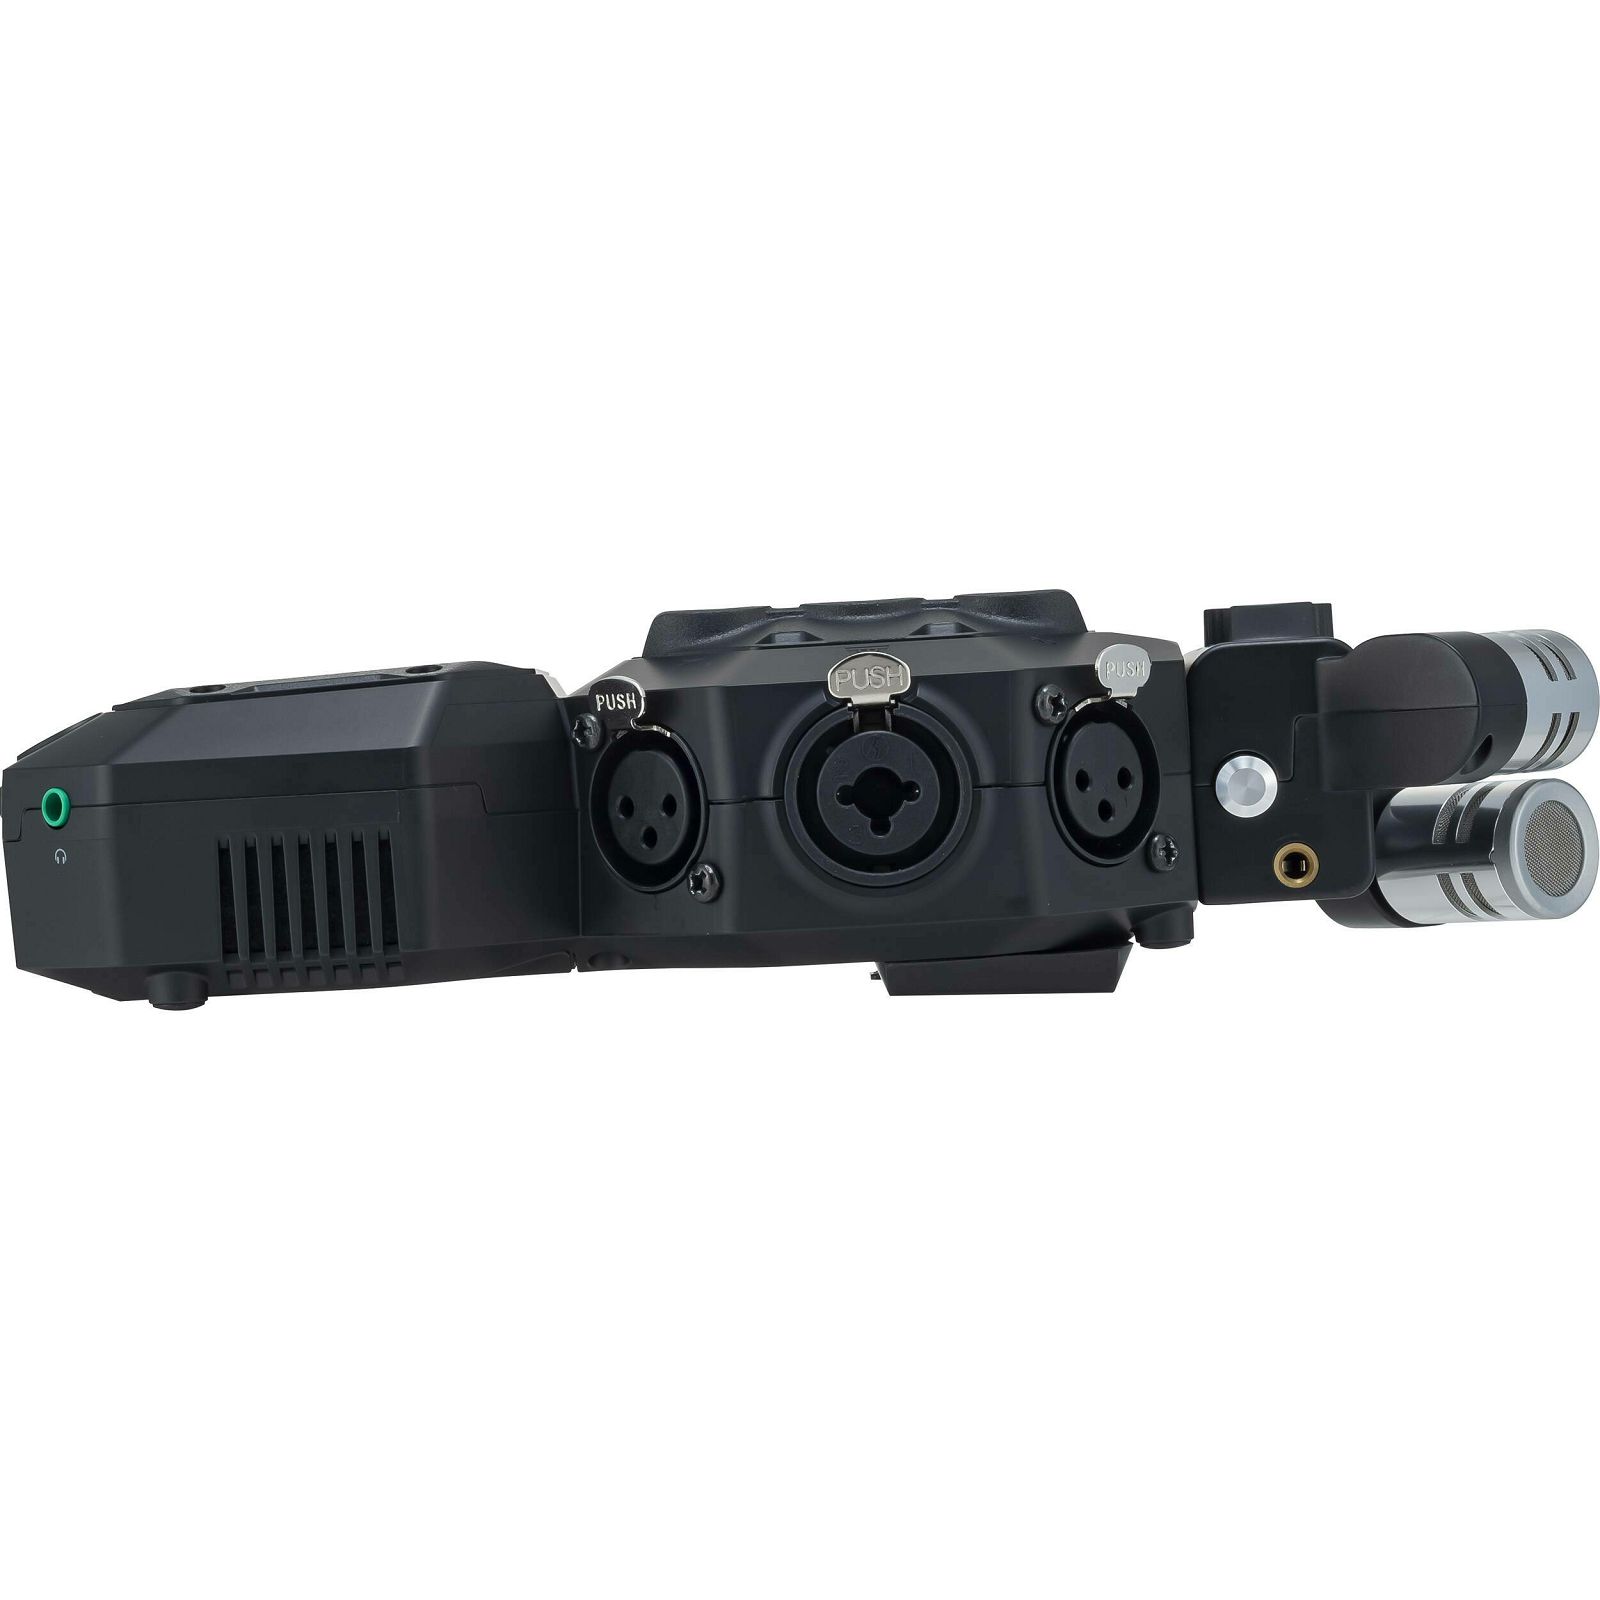 Zoom H8 Handy Recorder prijenosni snimač zvuka